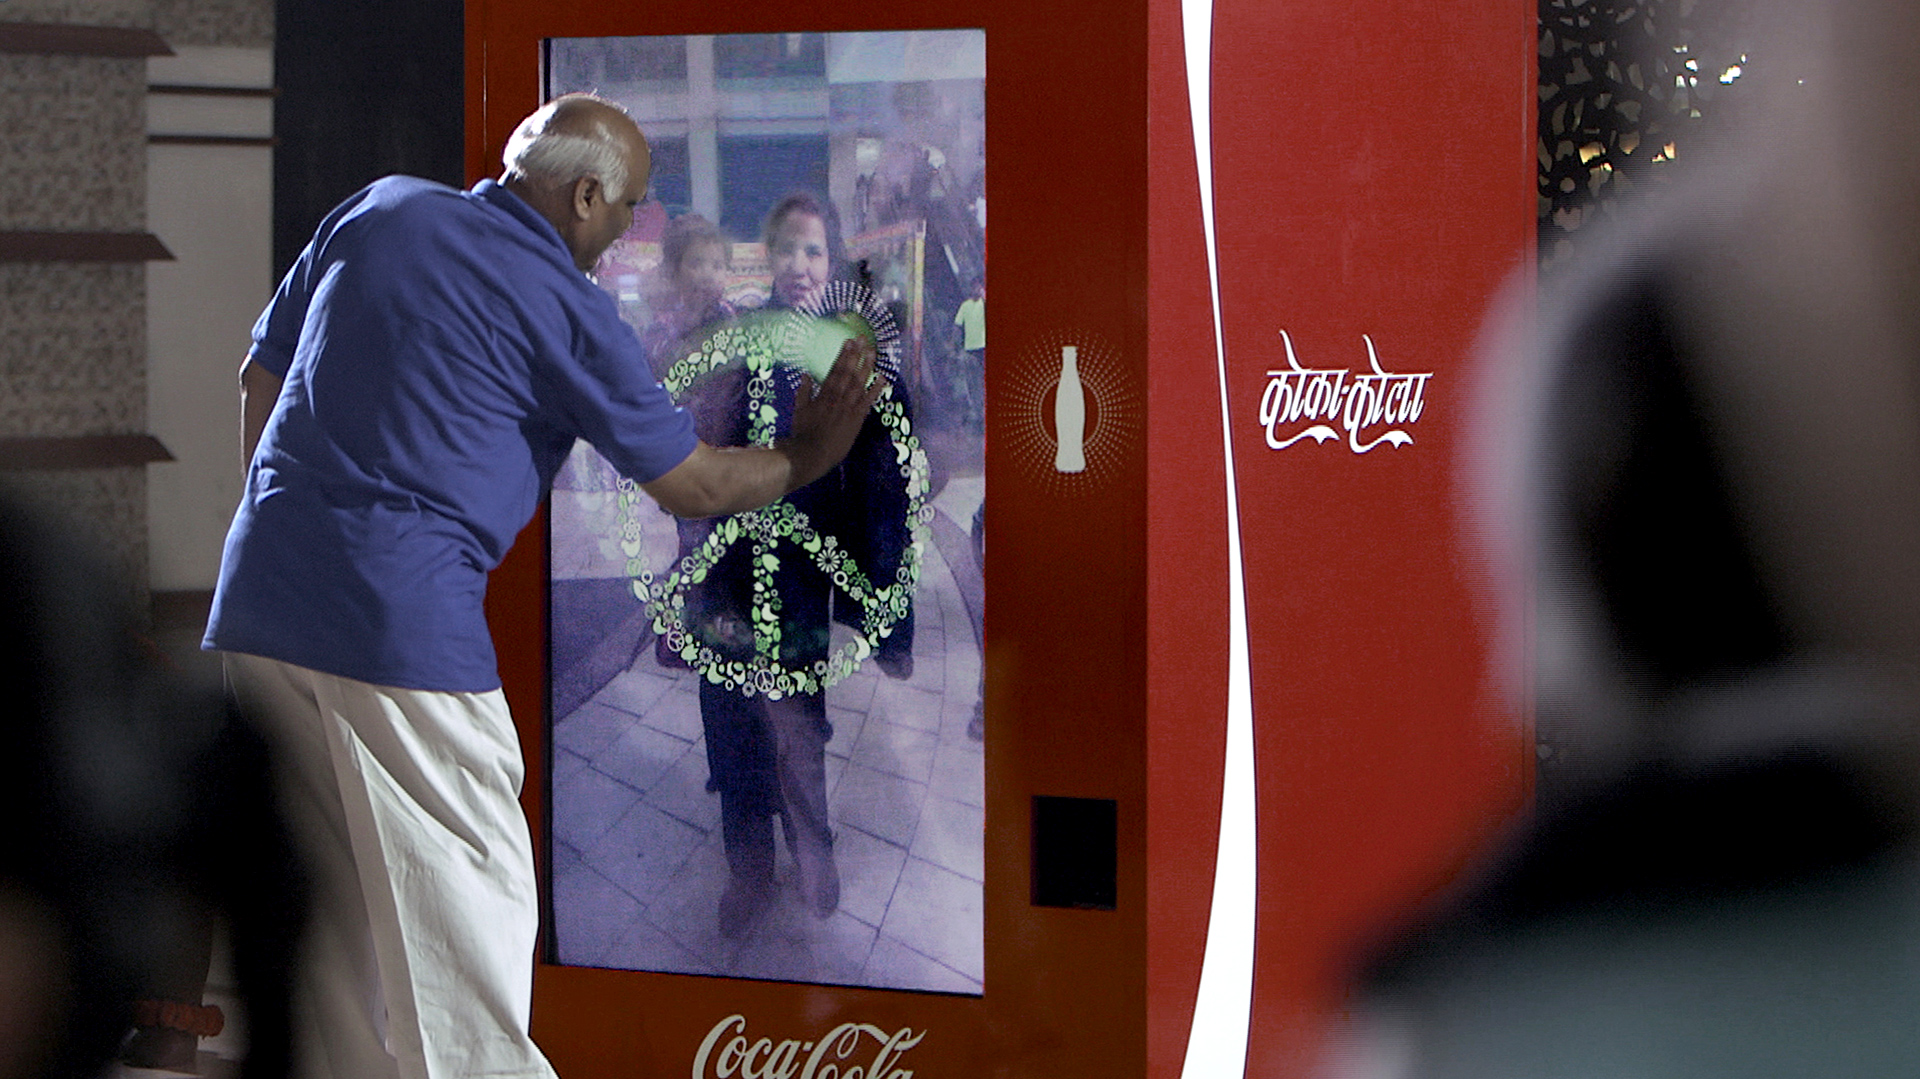 World's Smallest Coca-Cola